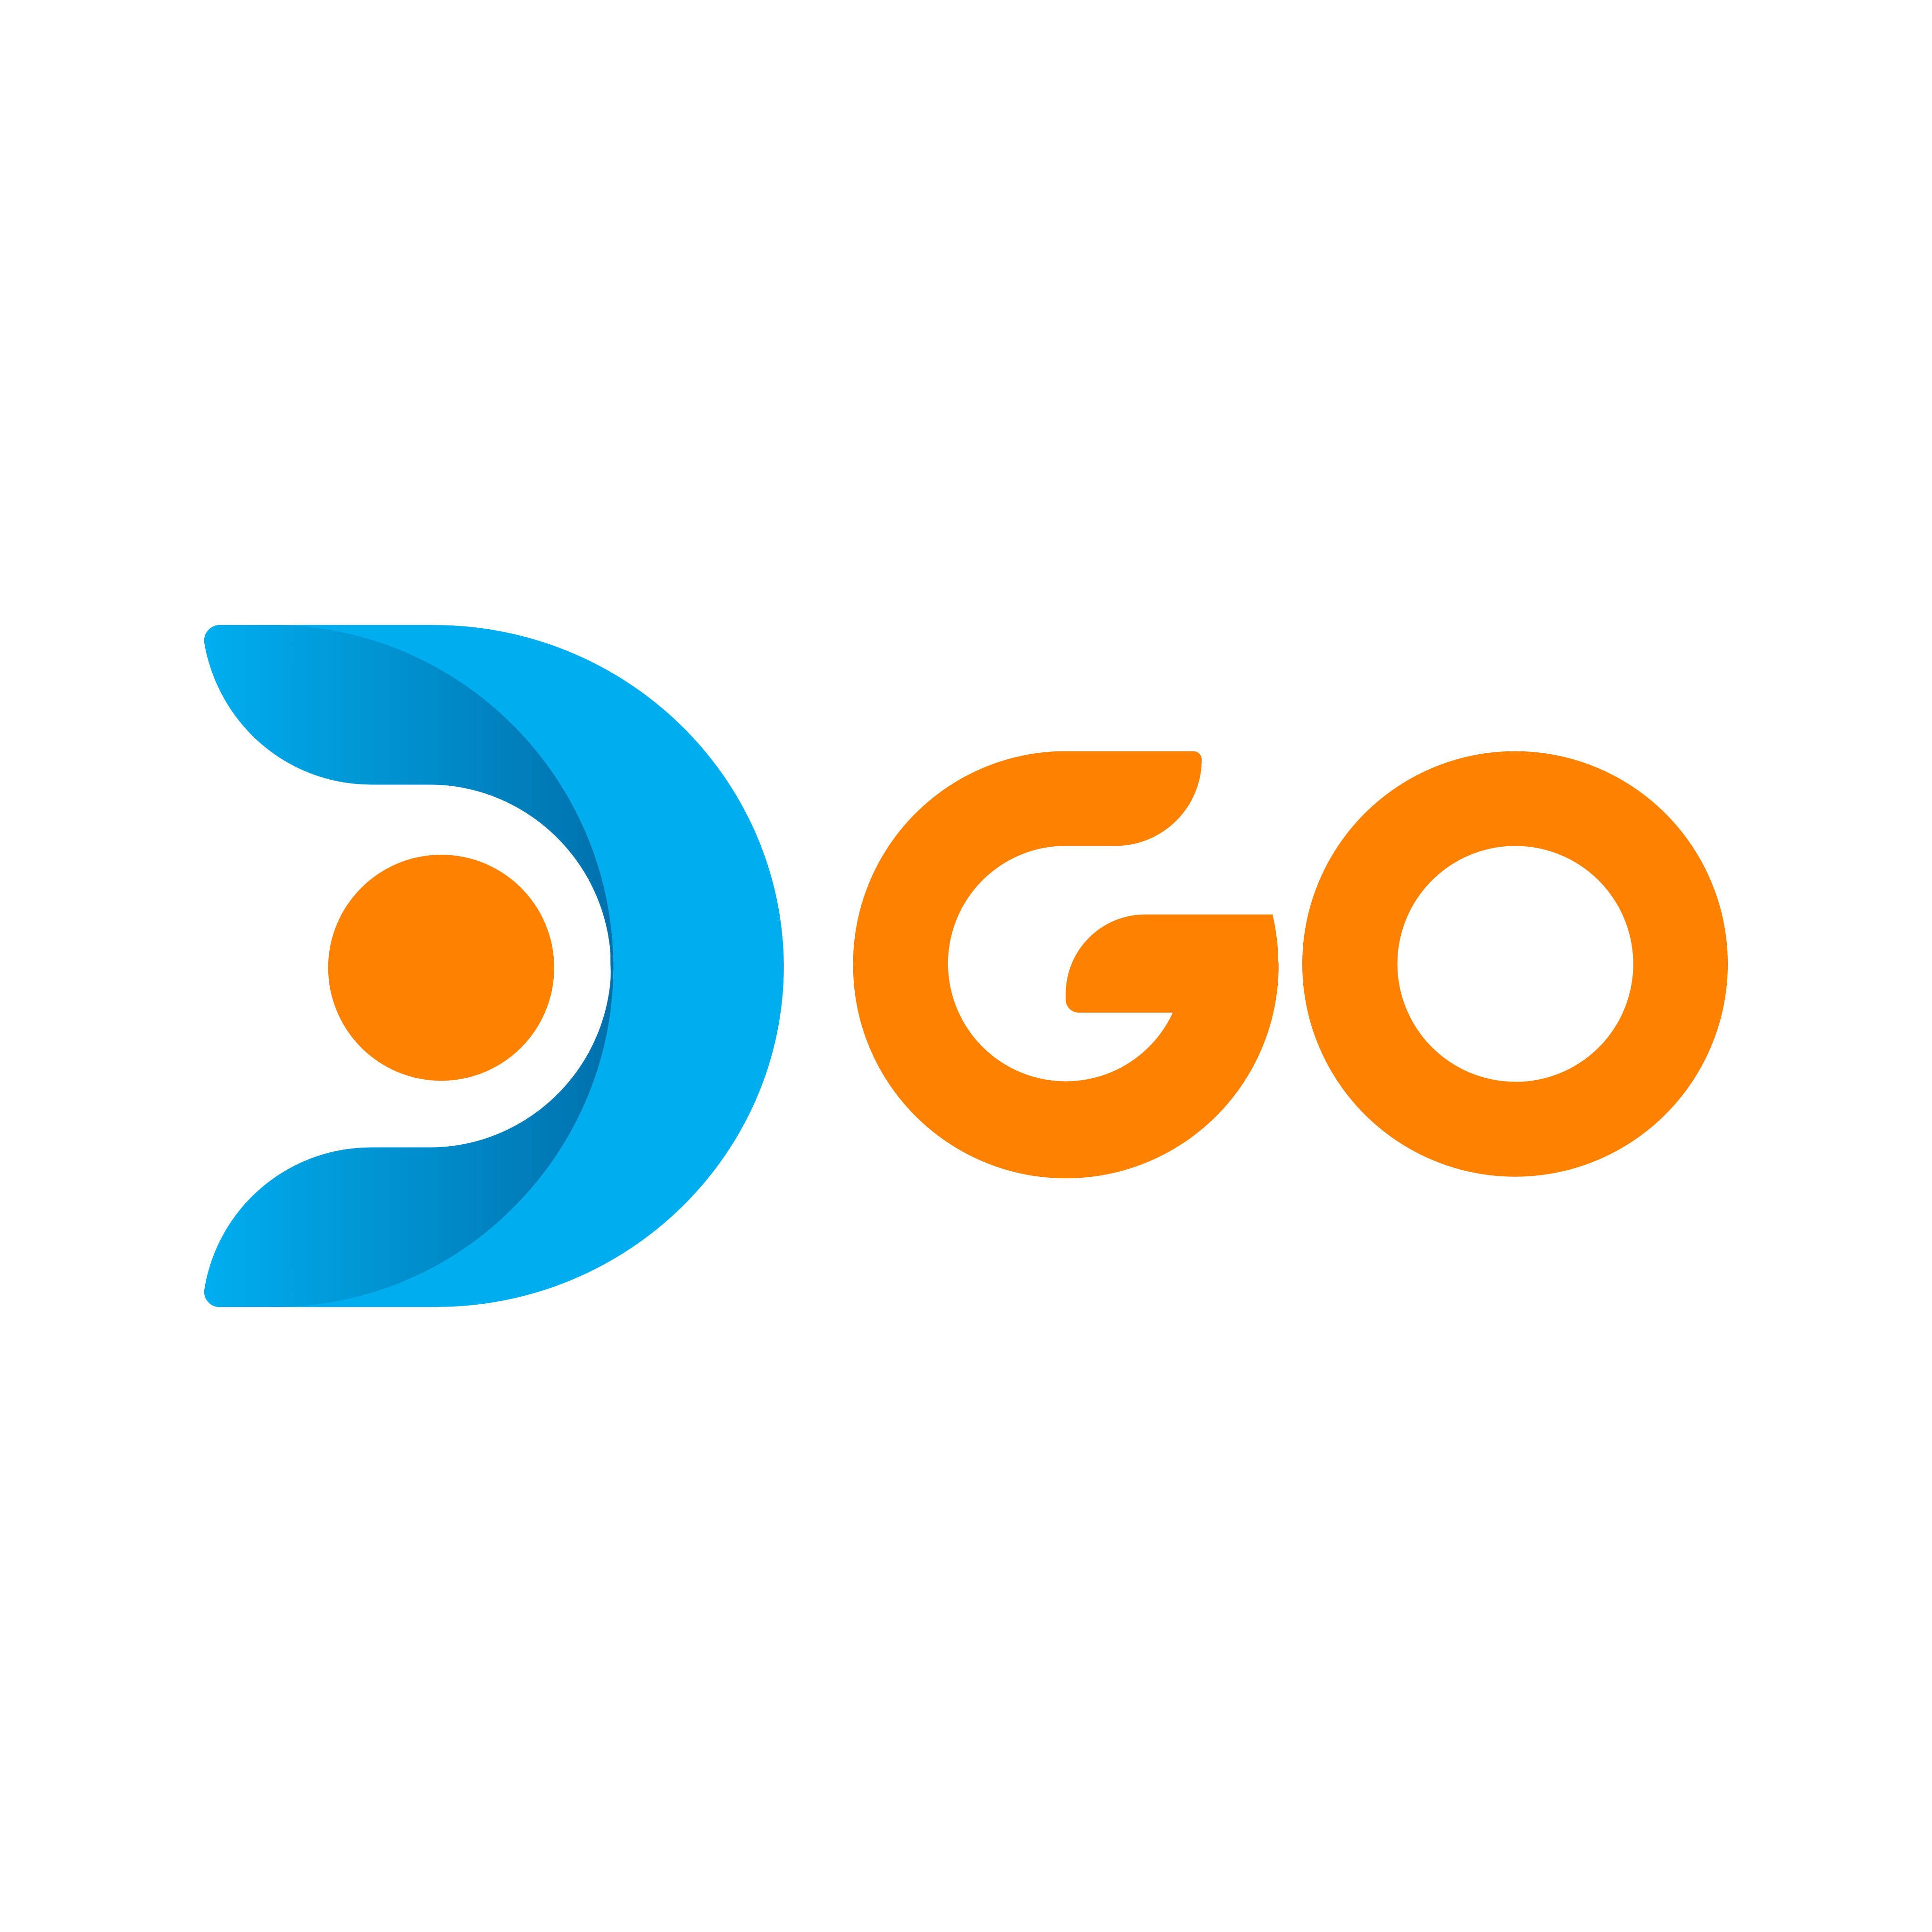 dgo logo 0 - DGO Logo